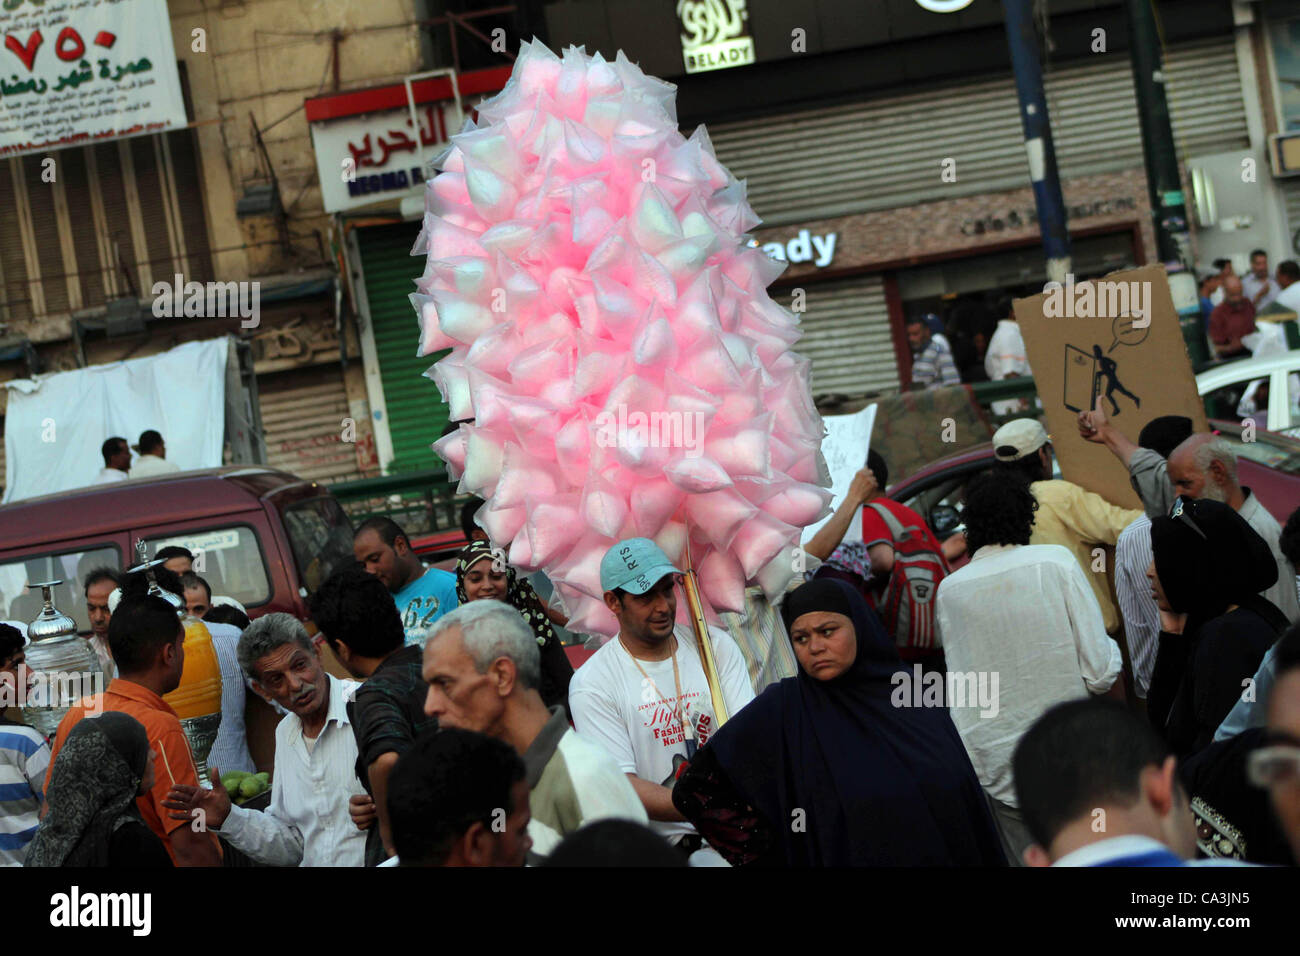 1 giugno 2012 - Il Cairo, il Cairo, Egitto - Un Egiziano vende caramelle durante una dimostrazione contro egiziano candidato presidenziale Ahmed Shafiq in piazza Tahrir condannare il risultato del primo turno di votazioni in egiziani di elezione presidenziale in Cairo, Egitto, venerdì 1 giugno, 2012. Diverse centinaia di pr Foto Stock